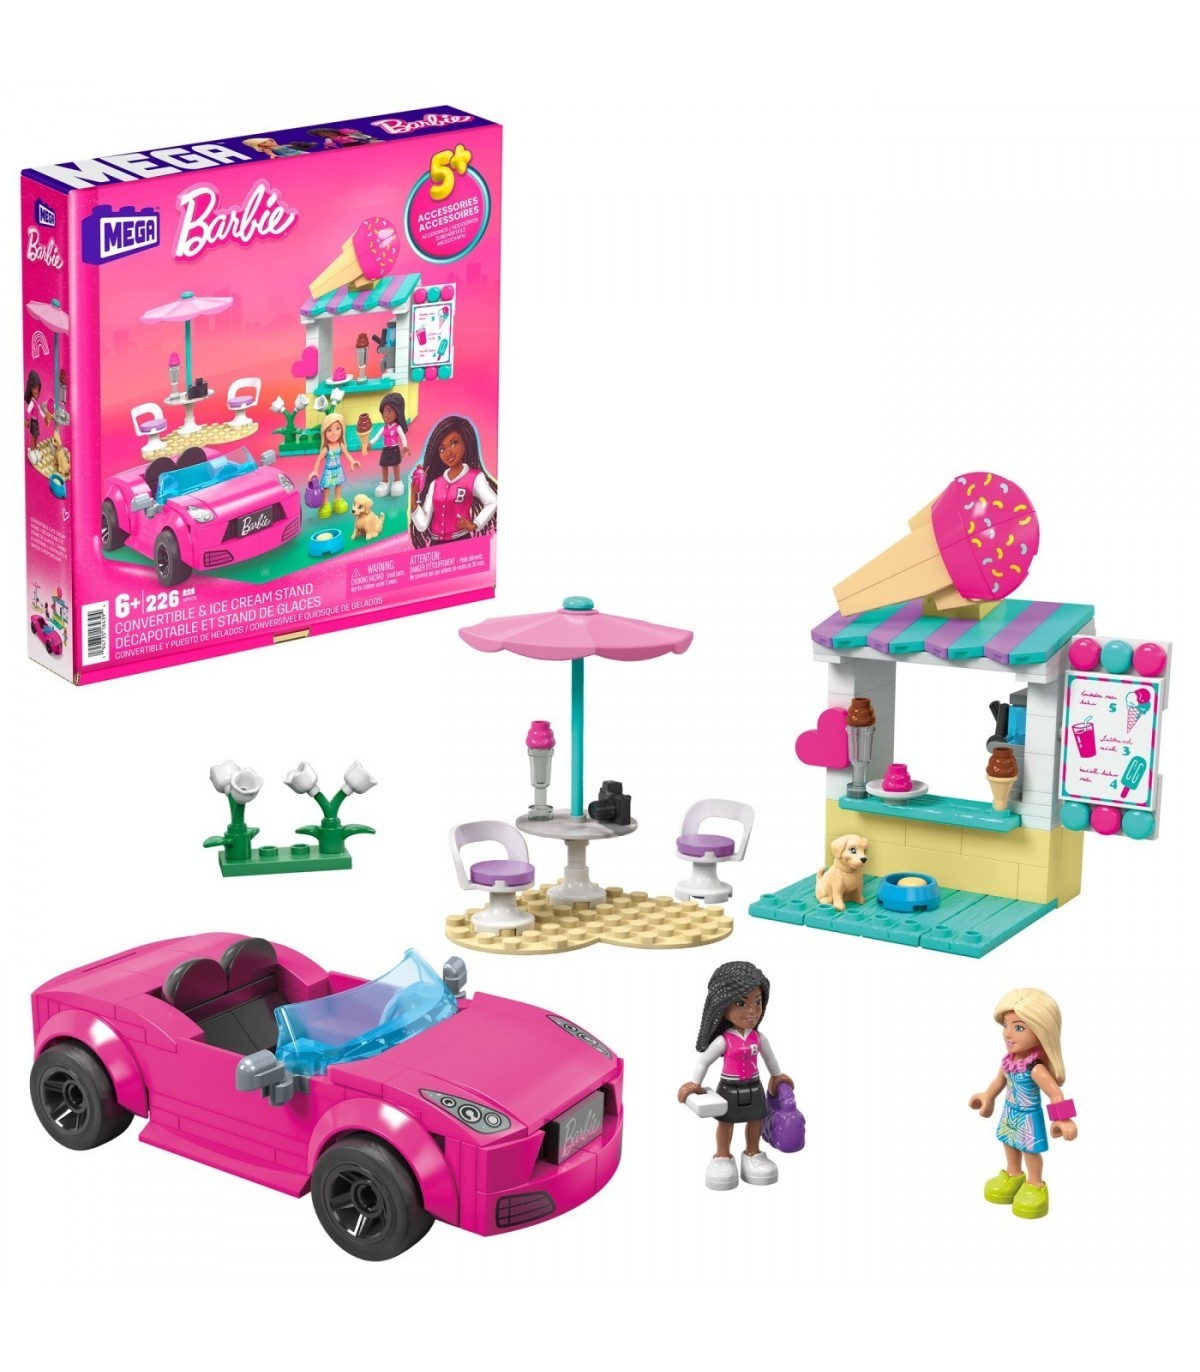 Set de joaca - Barbie - Masina decapotabila si stand de inghetata | Mattel